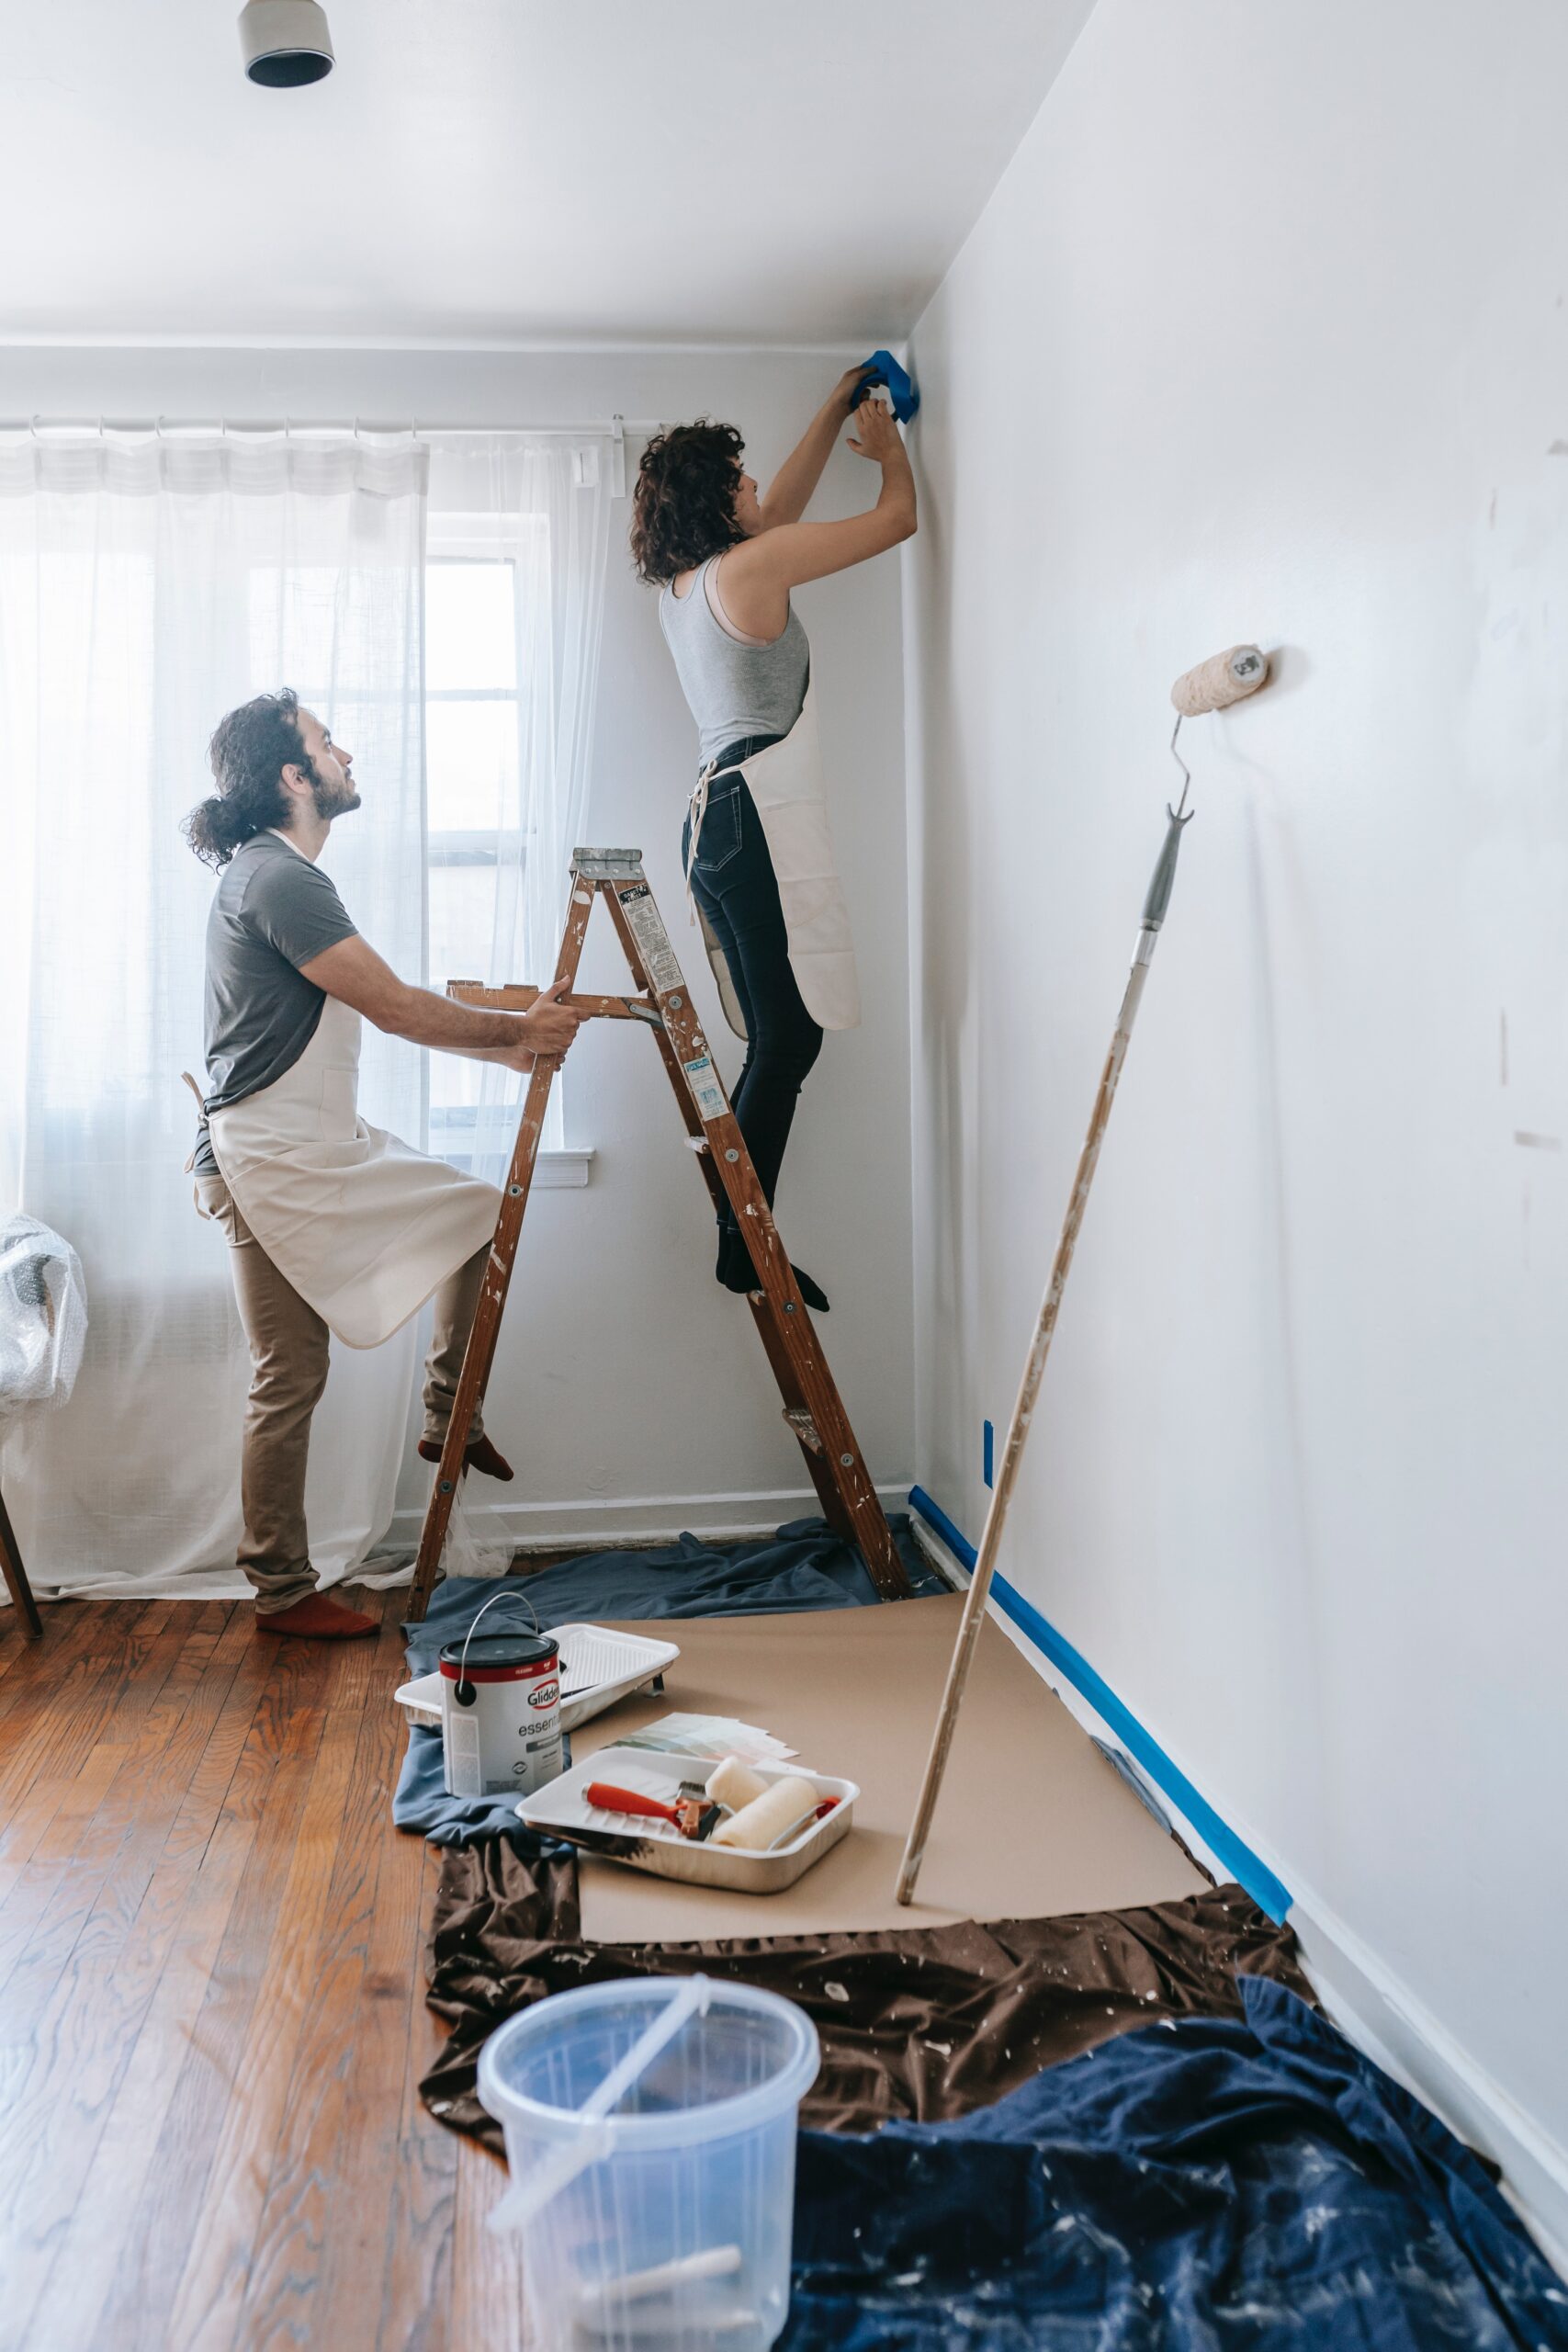 Bilden visar ett rum som målas eller tapetseras om. Stuckaturer kan skapa snygga inslag även i nyare byggnader och skapa en mer tidlös inredning.